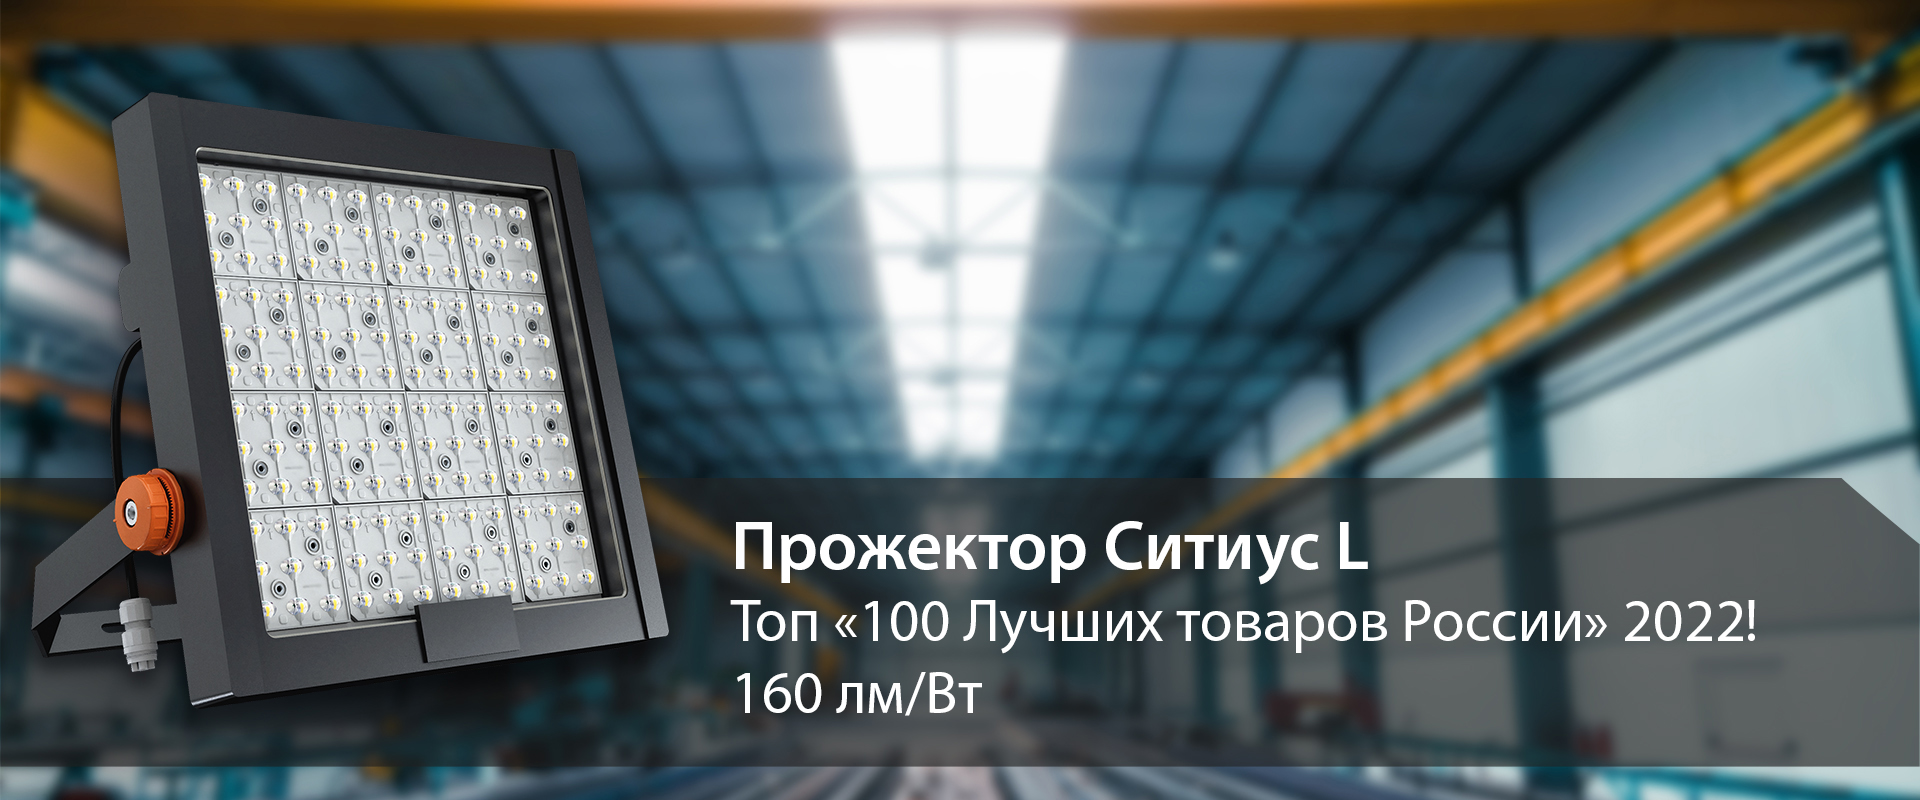 Прожектор GALAD Ситиус L LED - победитель федерального этапа Всероссийского конкурса «100 Лучших товаров России» – 2022